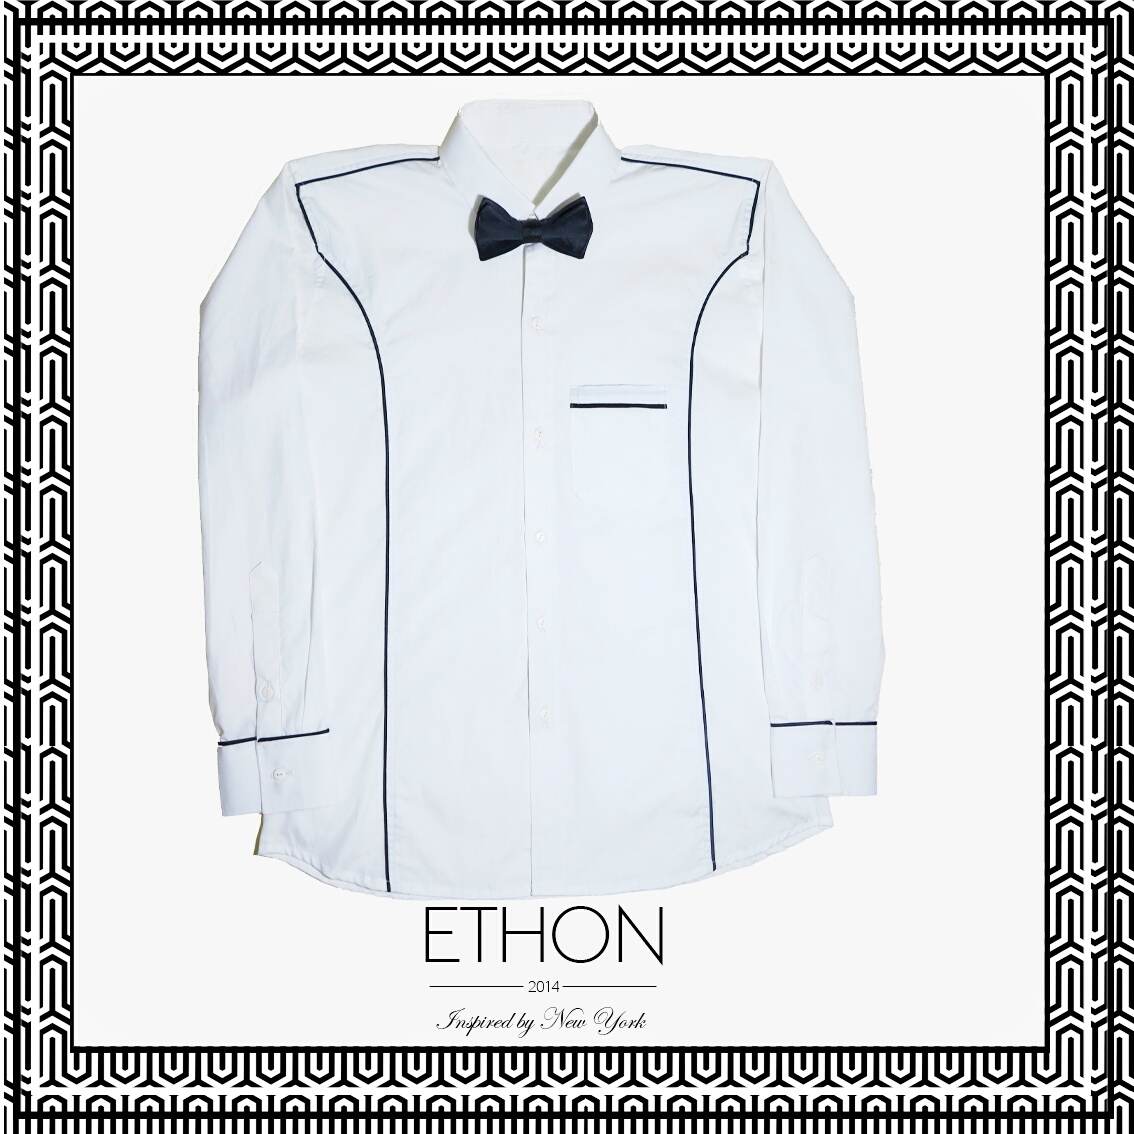 Ethon Tux Camouflage Shirt